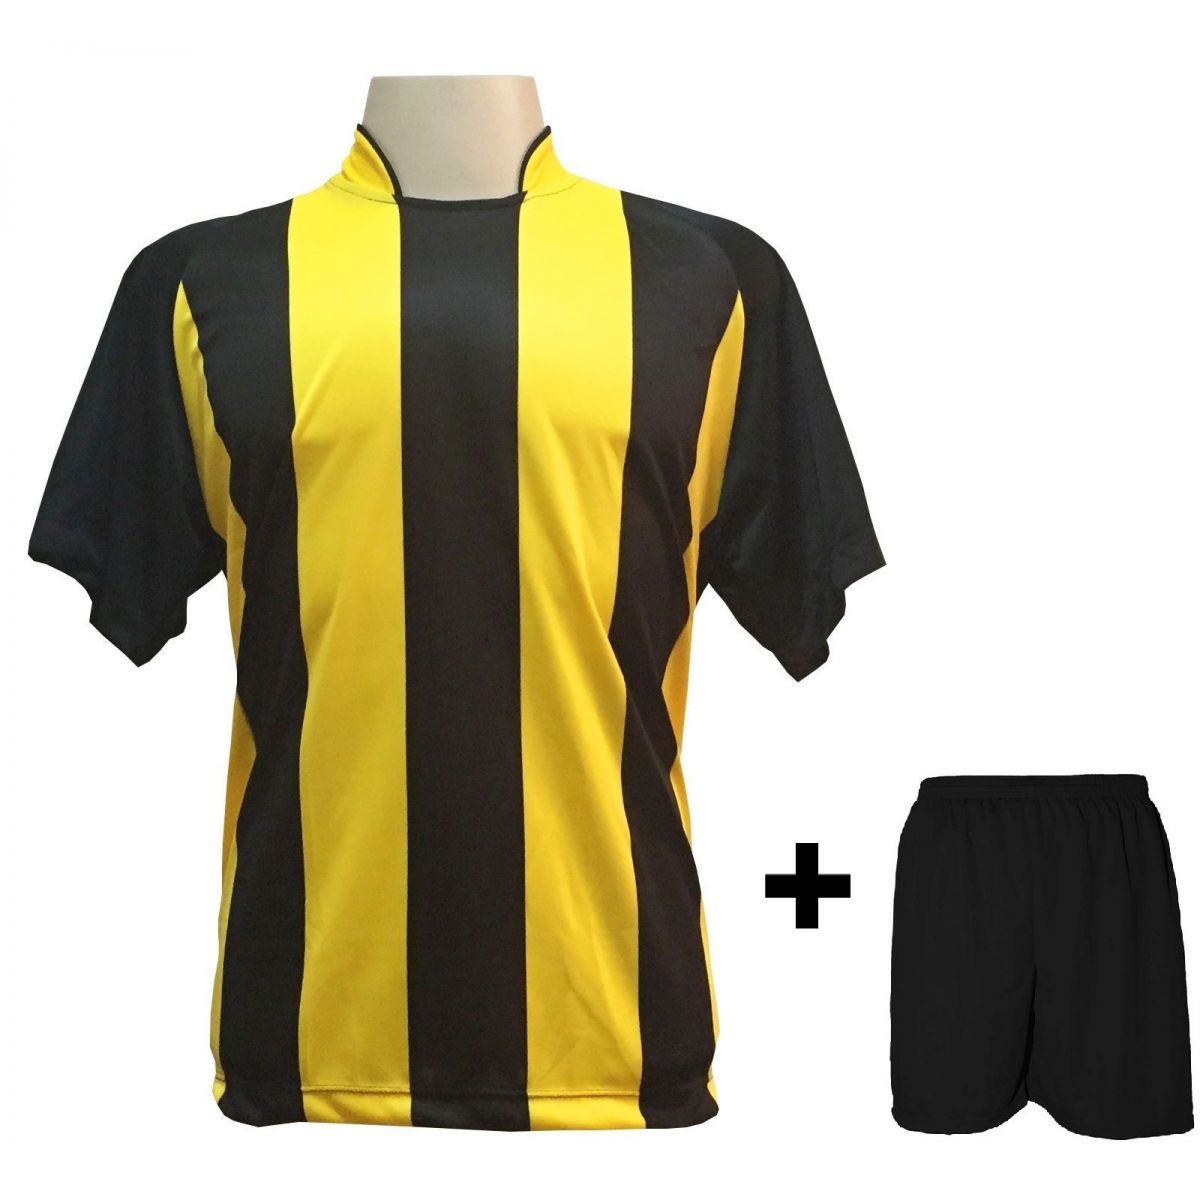 Uniforme Esportivo com 12 camisas modelo Milan Preto/Amarelo + 12 calções modelo Madrid Preto + Brindes